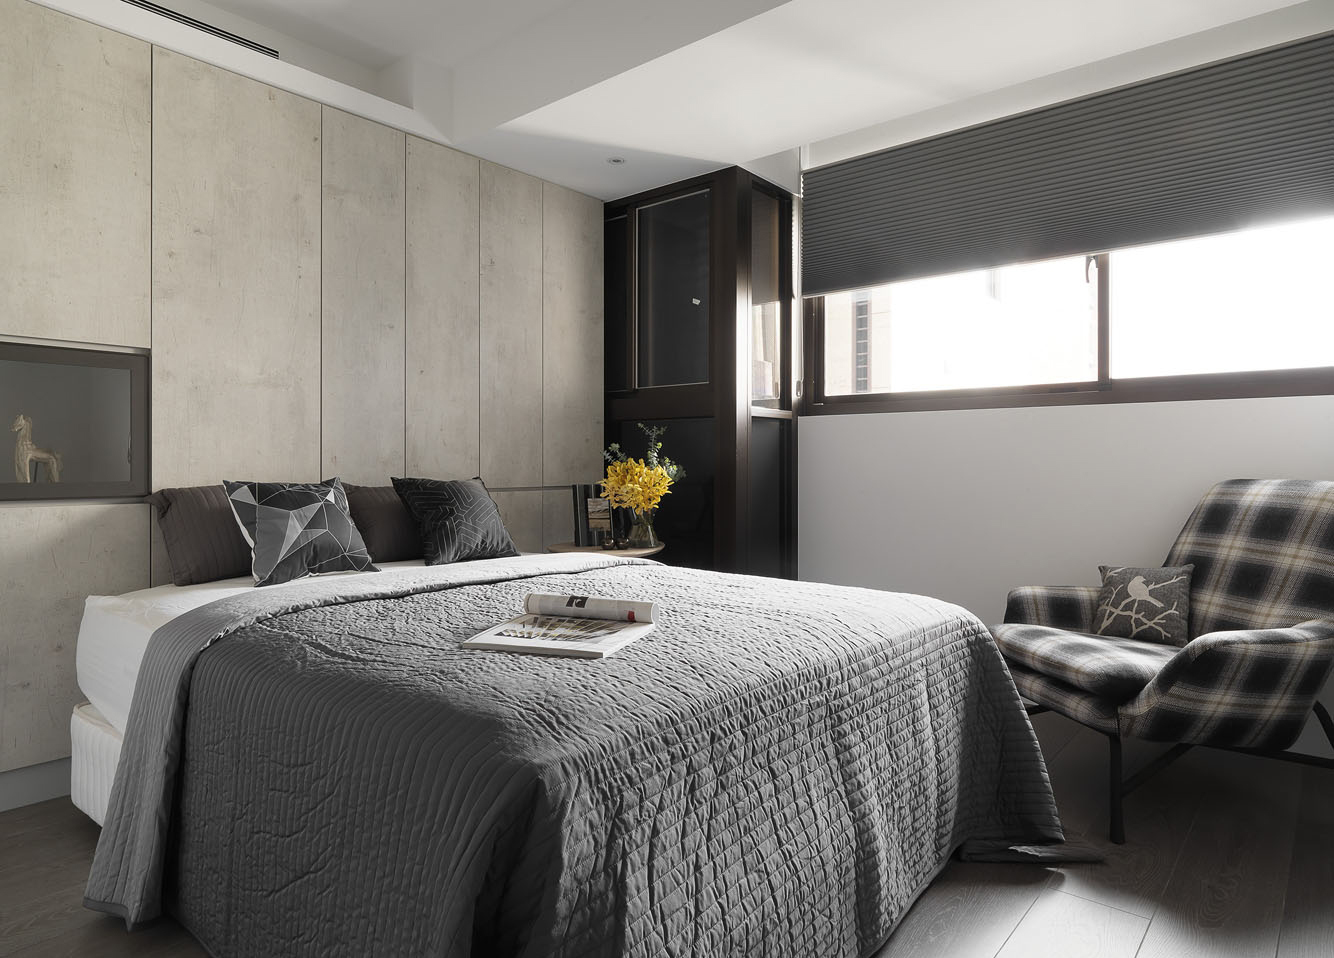 木质调背景搭配灰白色床品，让整个次卧空间都沉浸在祥和温馨的氛围中。